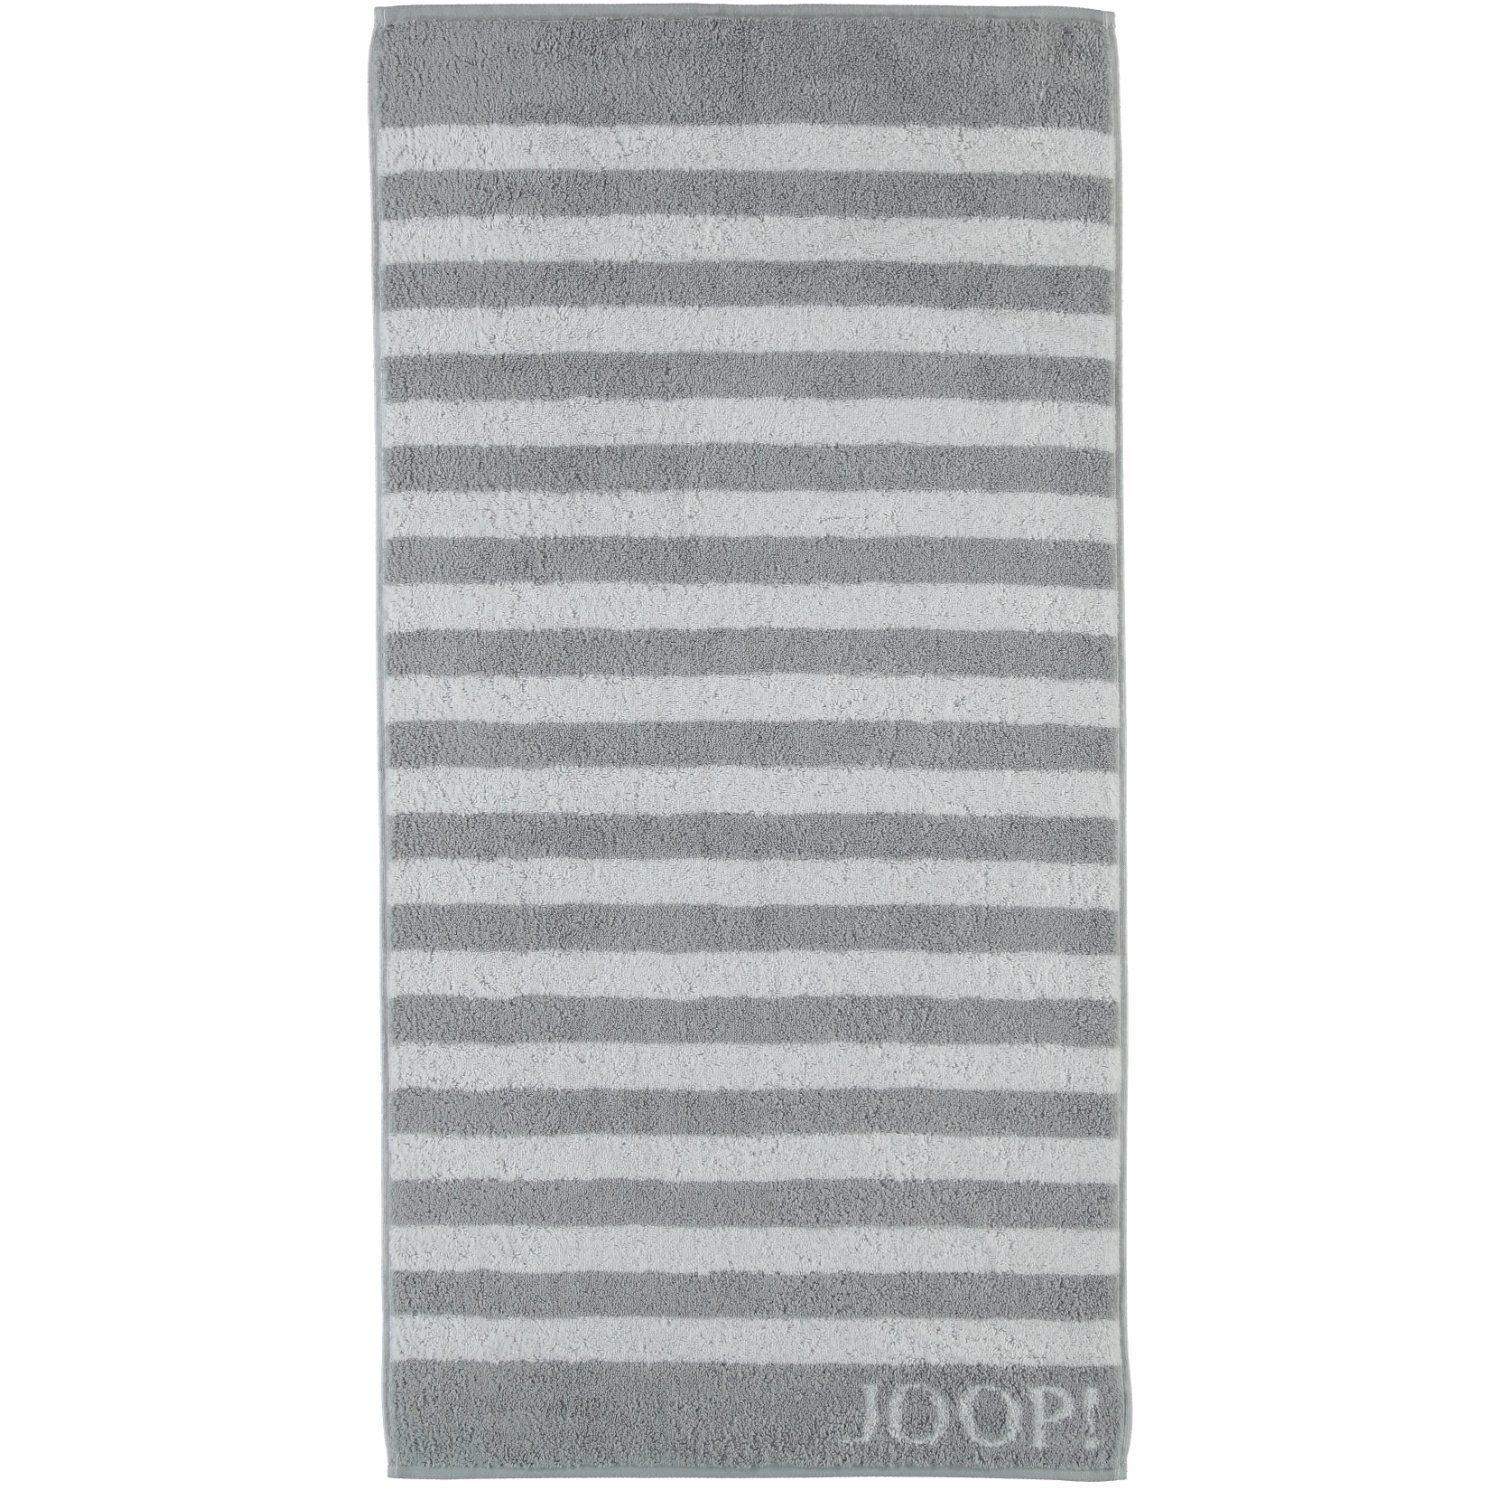 (76) Silber Joop! Handtücher Classic 100% Stripes Baumwolle 1610,